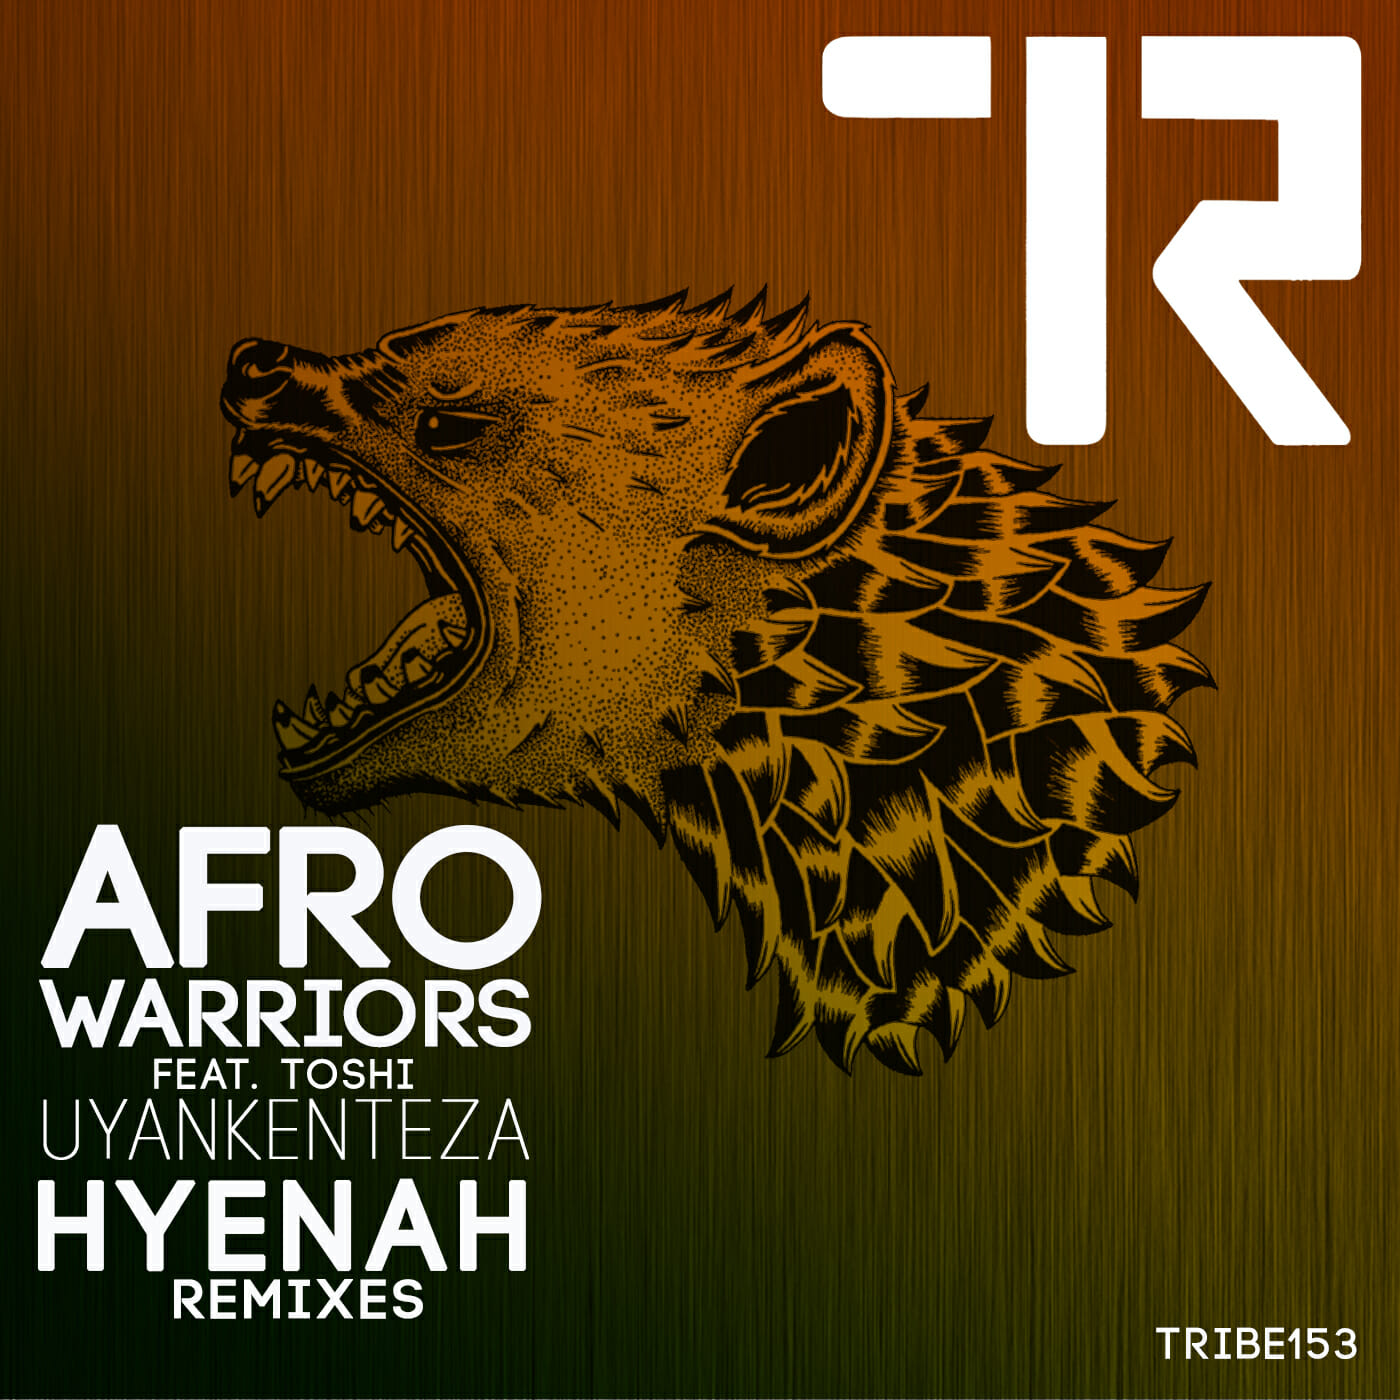 Premiere: Afro Warriors ft. Toshi – Uyankenteza (Hyenah Remix)Uyankenteza Hyenah Remi